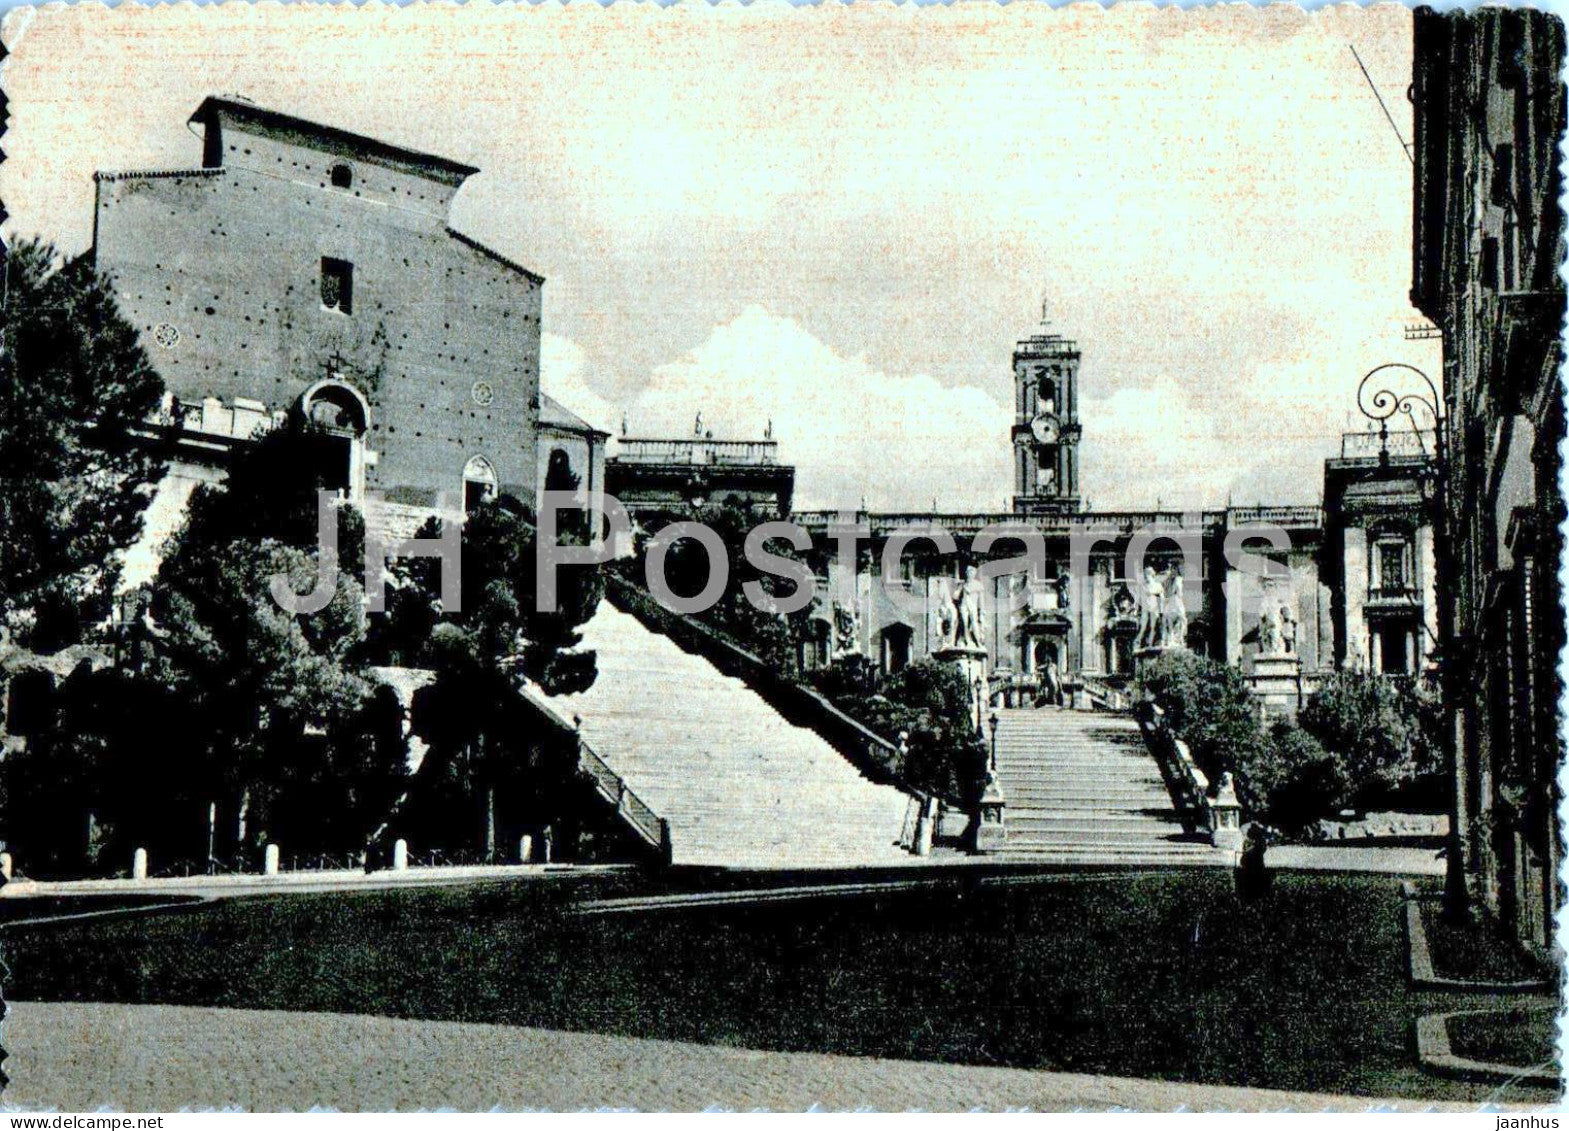 Roma - Rome - Il Campidoglio e la Chiesa dell'Aracoeli - The Capitol and Church - old postcard - Italy - unused - JH Postcards